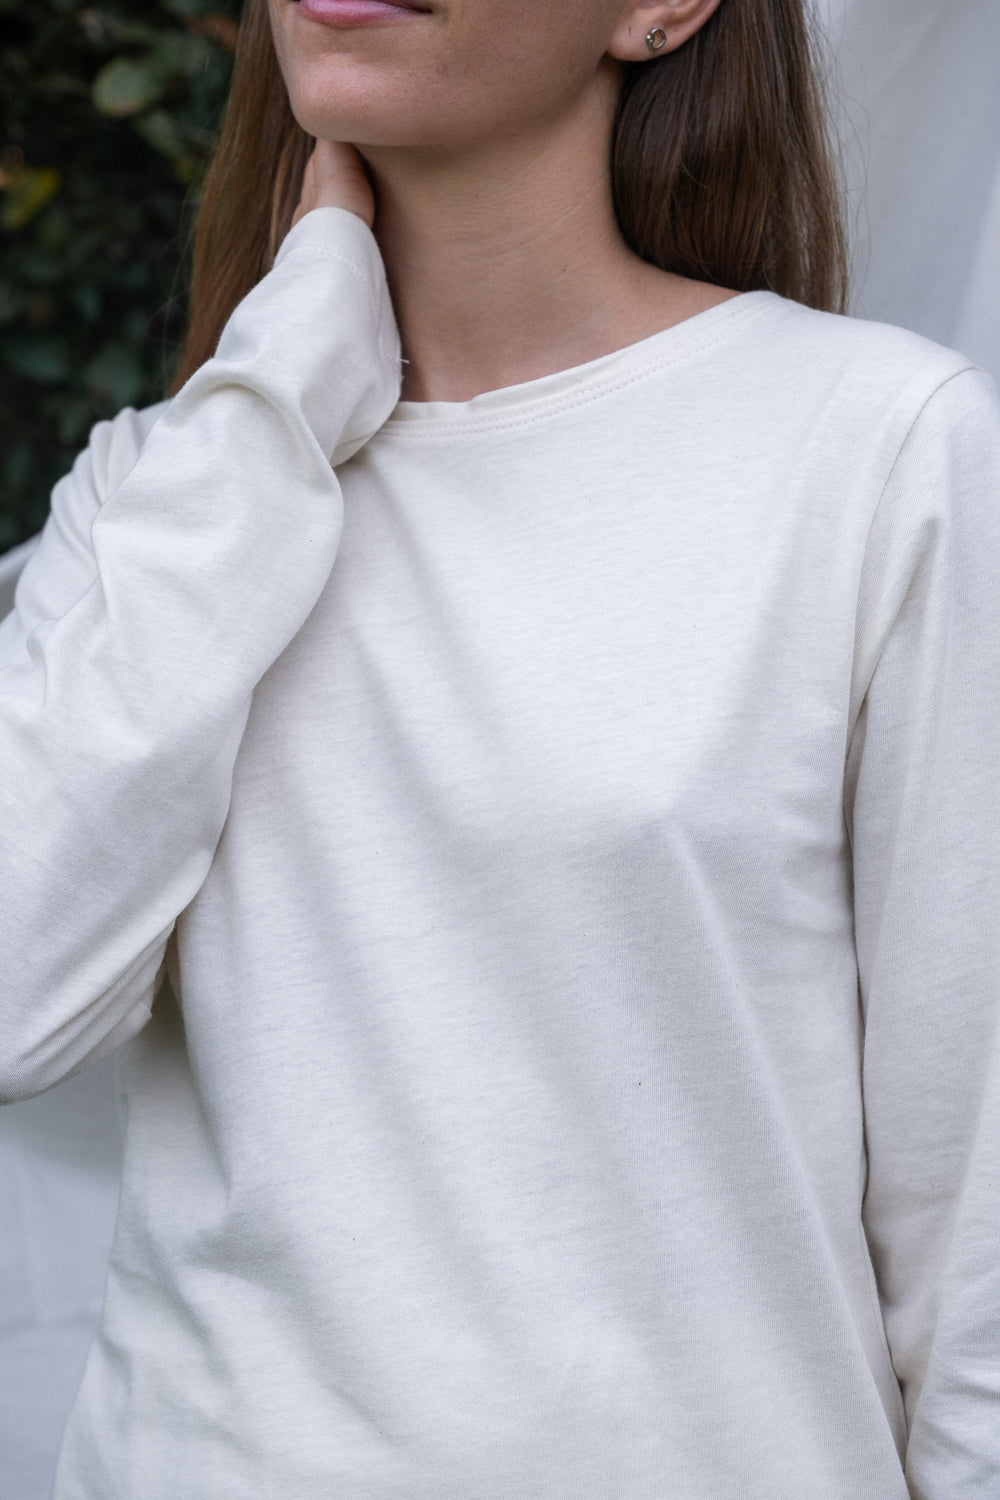 Camiseta Esencial mujer manga larga - blanco y natural – MIA Moda  Regenerativa